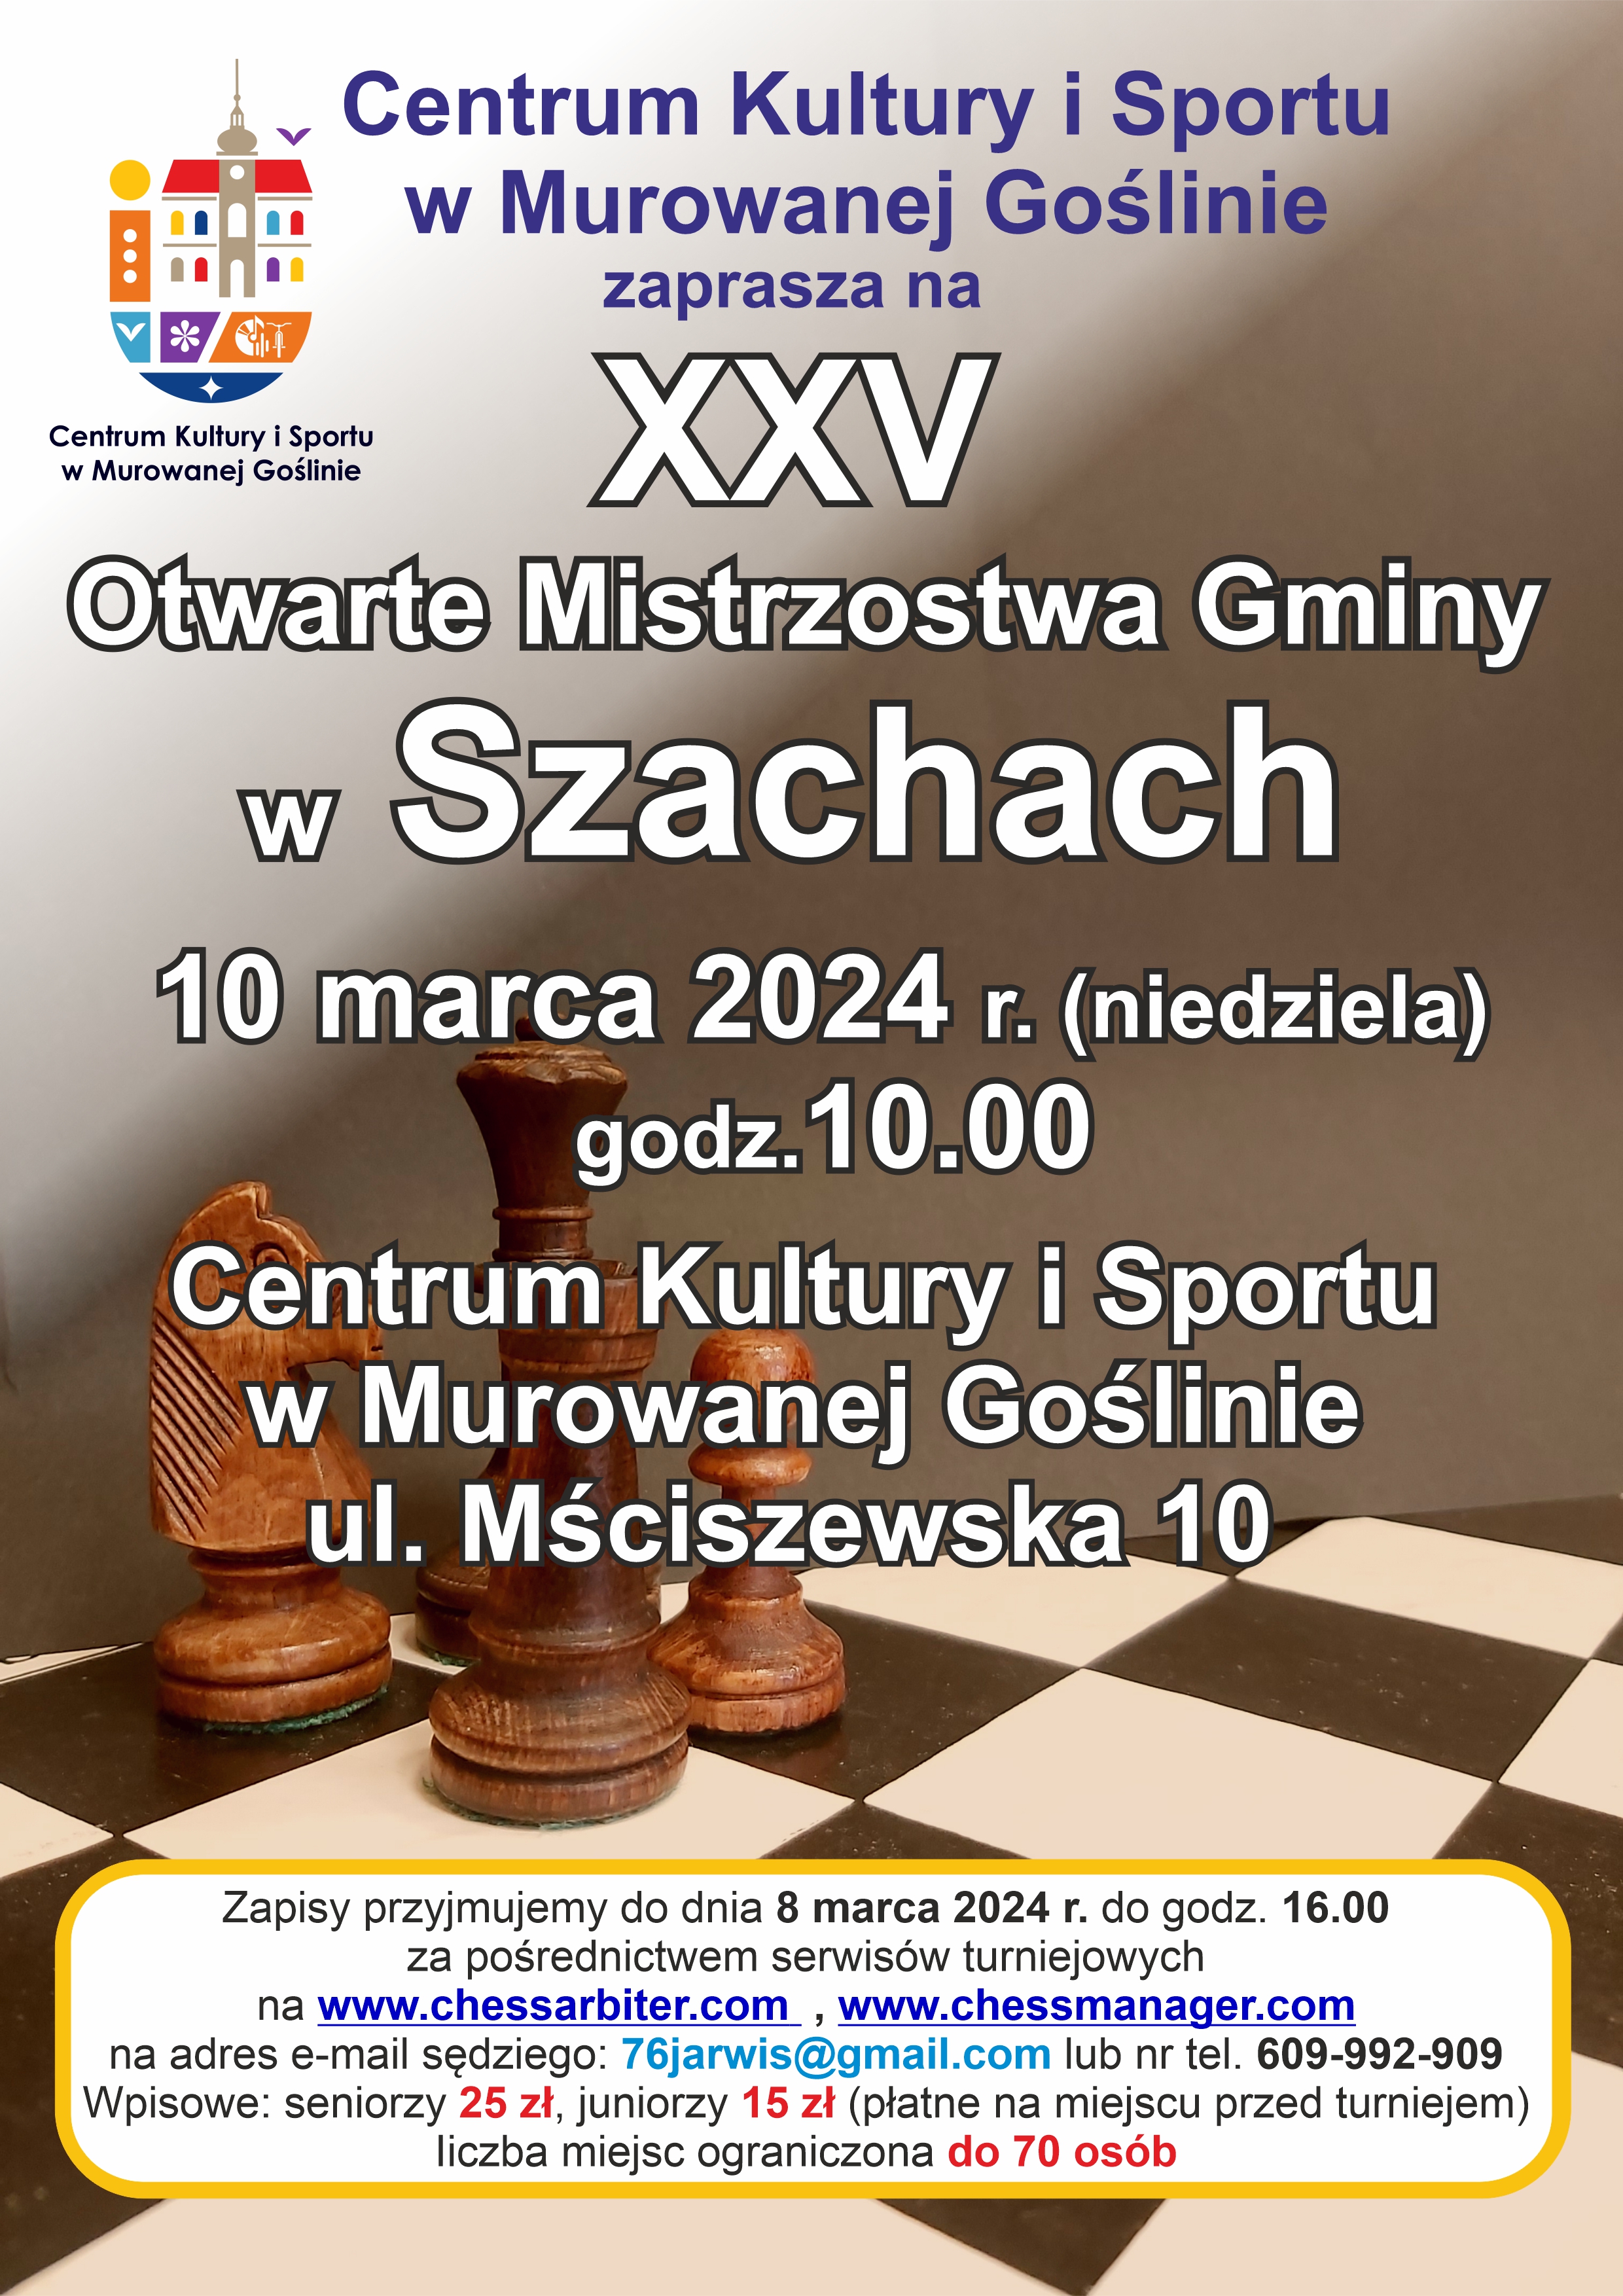 Otwarte Mistrzostwa Gminy w Szachach, 10 marca, godz: 10.00, zapisy do 8 marca, wpisowe 25 zł senior, 15 zł junior, na zdjęciu plansza szachów z pionkami 